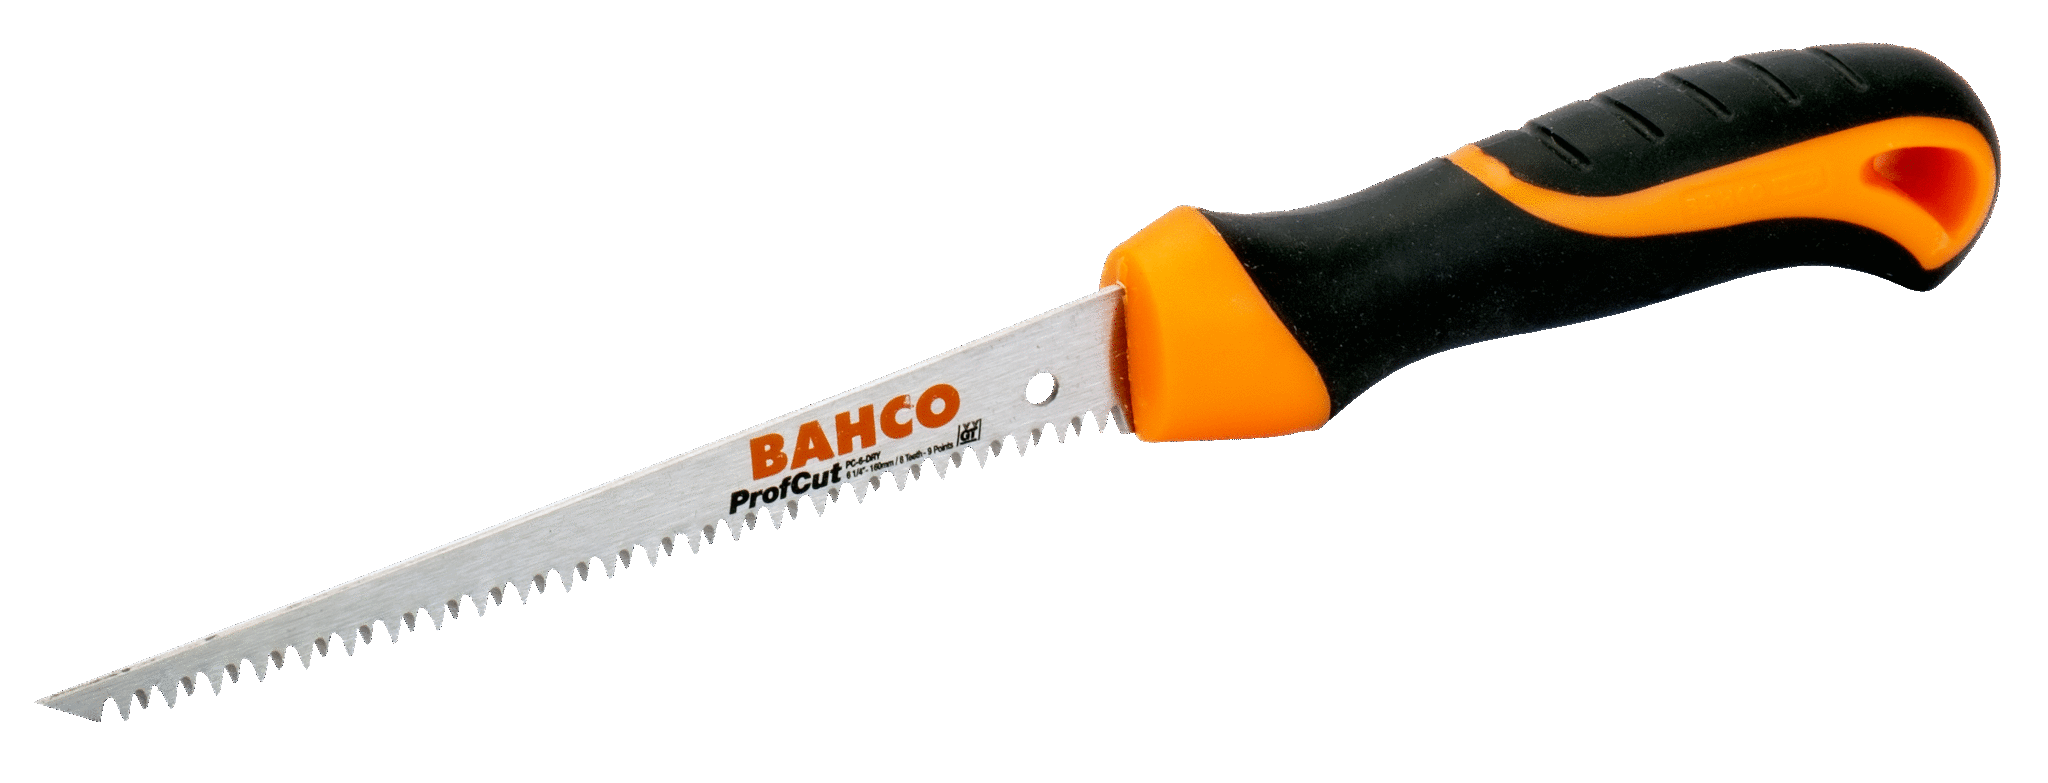 Выкружная ножовка для гипсокартона BAHCO PC-6-DRY